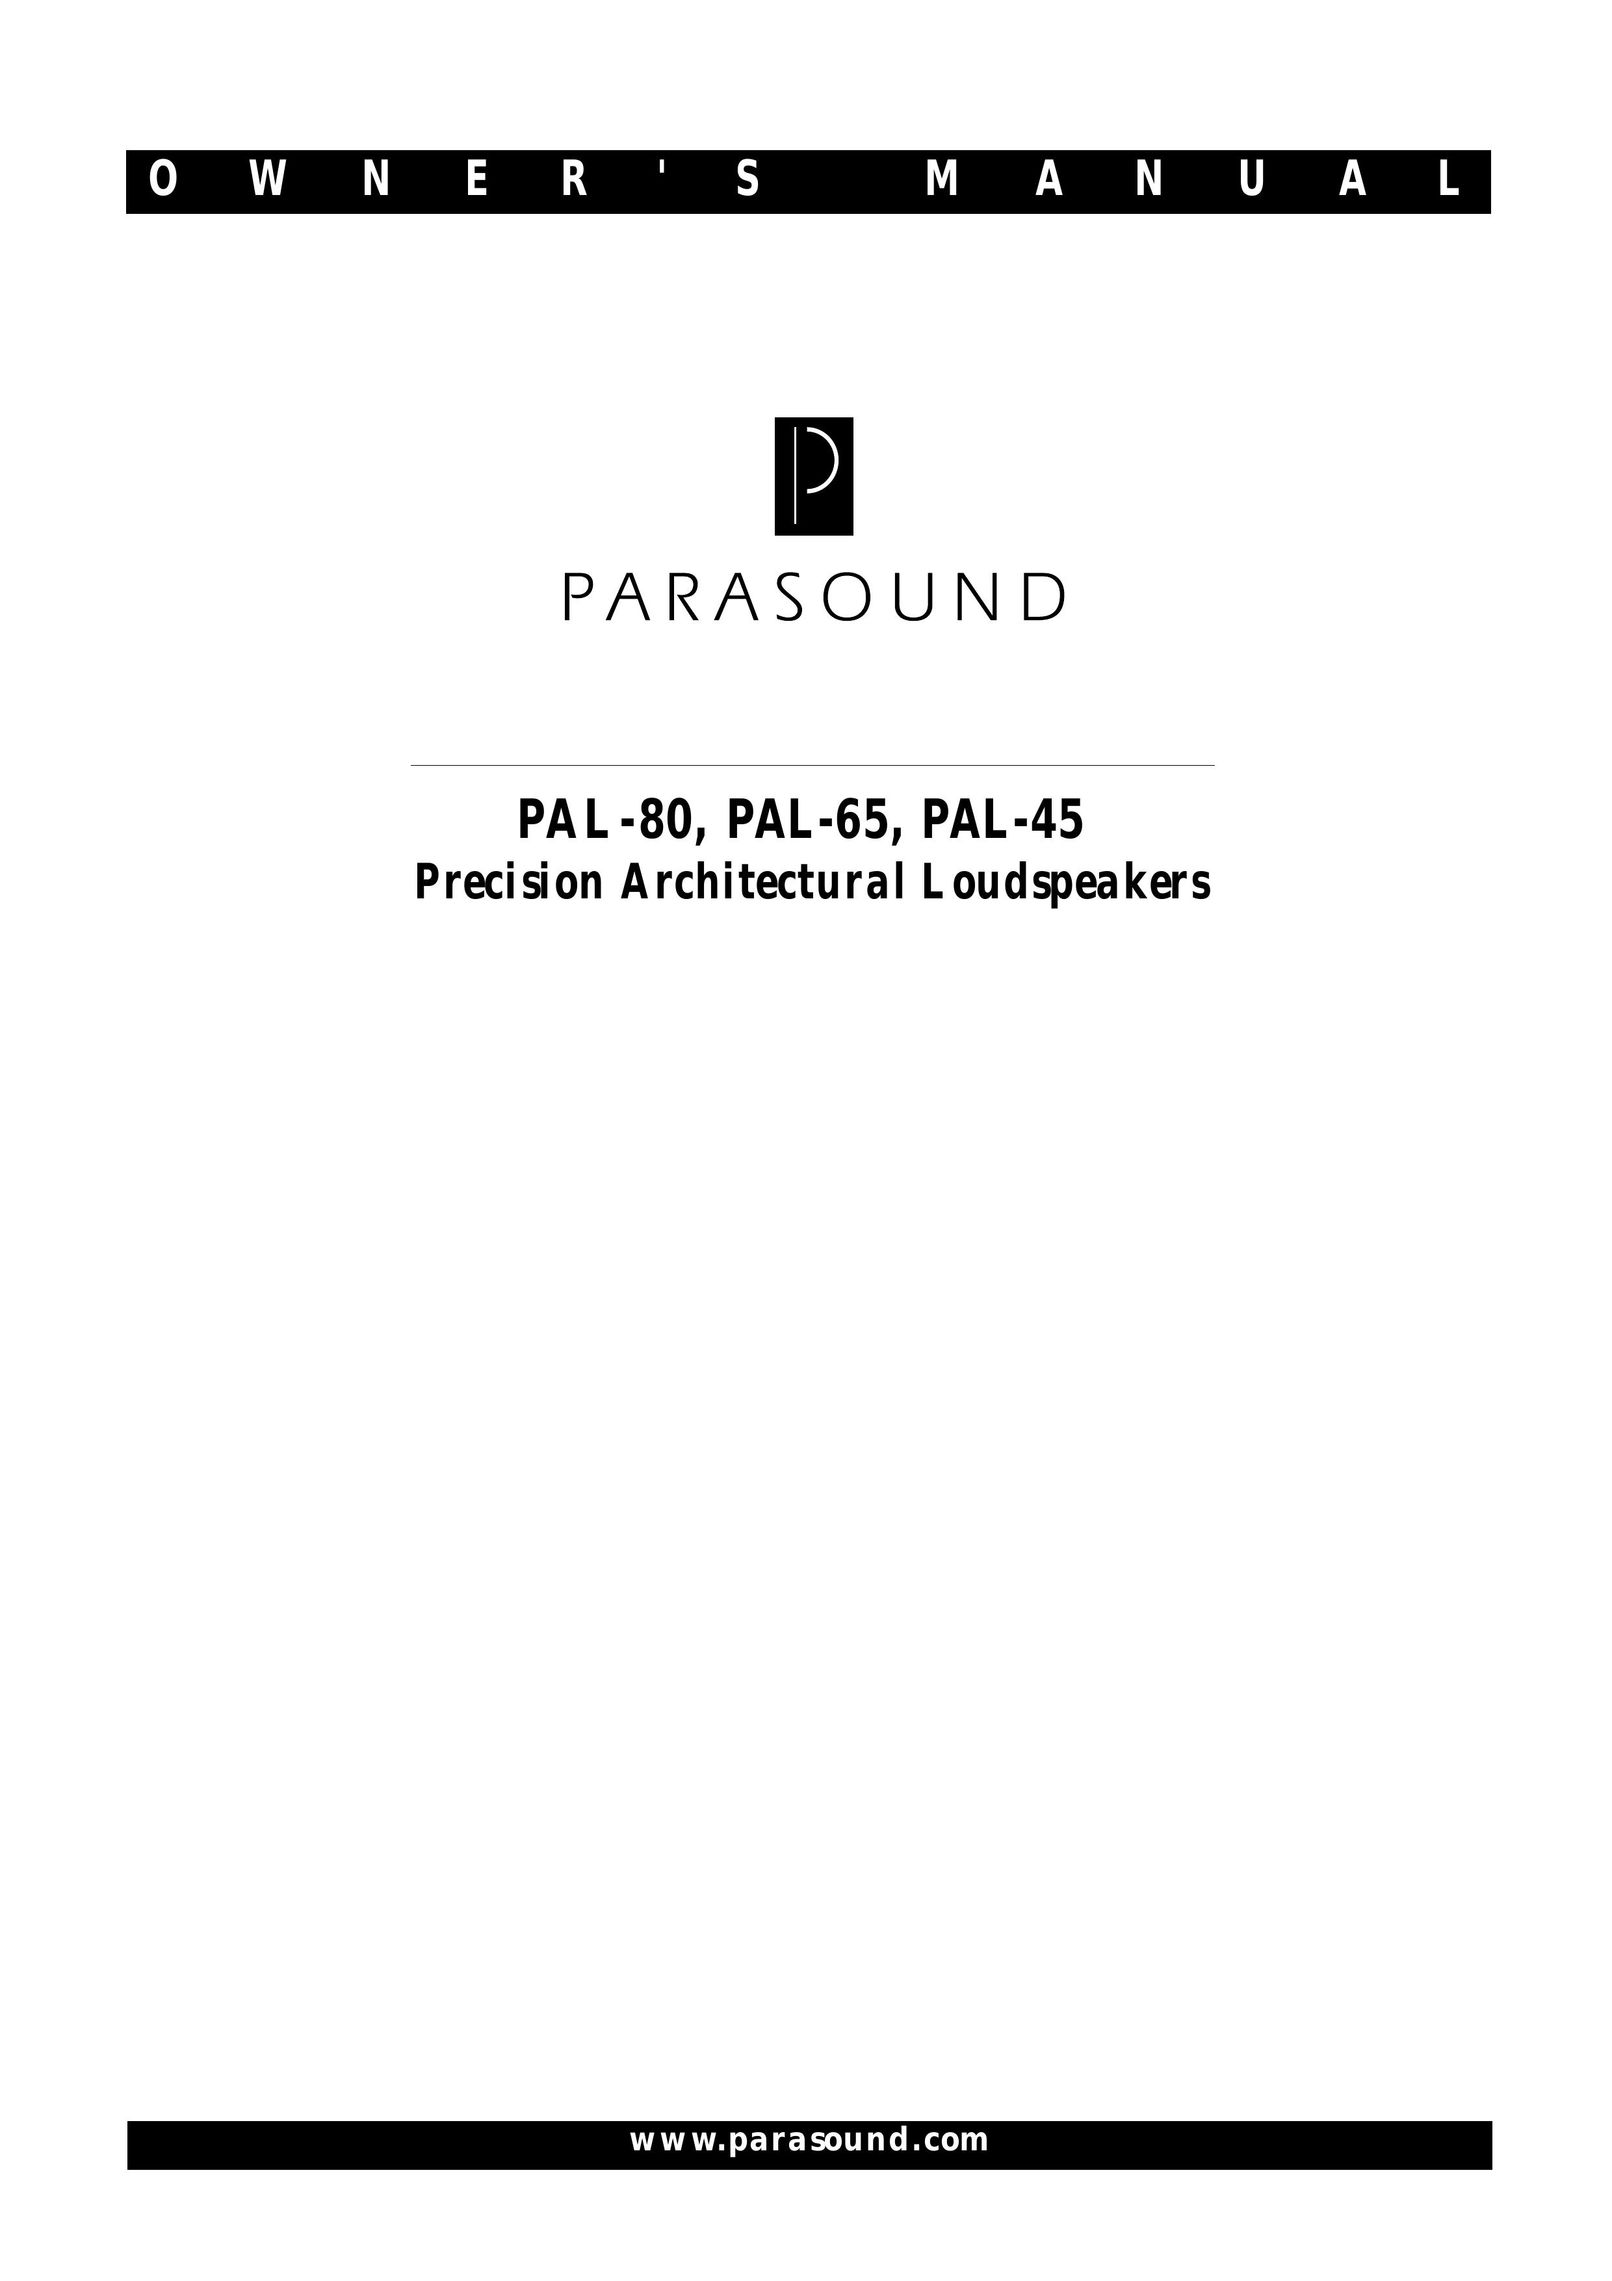 Parasound PAL-80 Portable Speaker User Manual